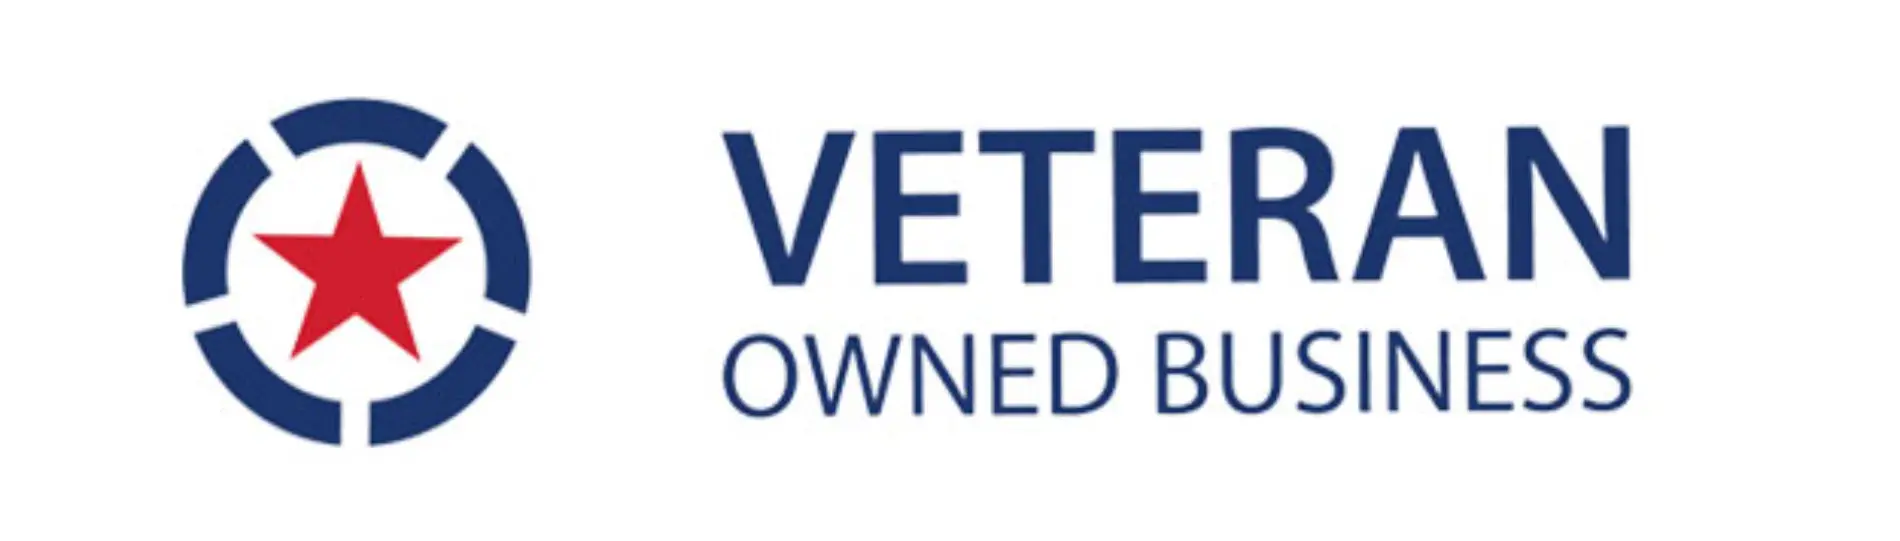 Veteran_owned_business1